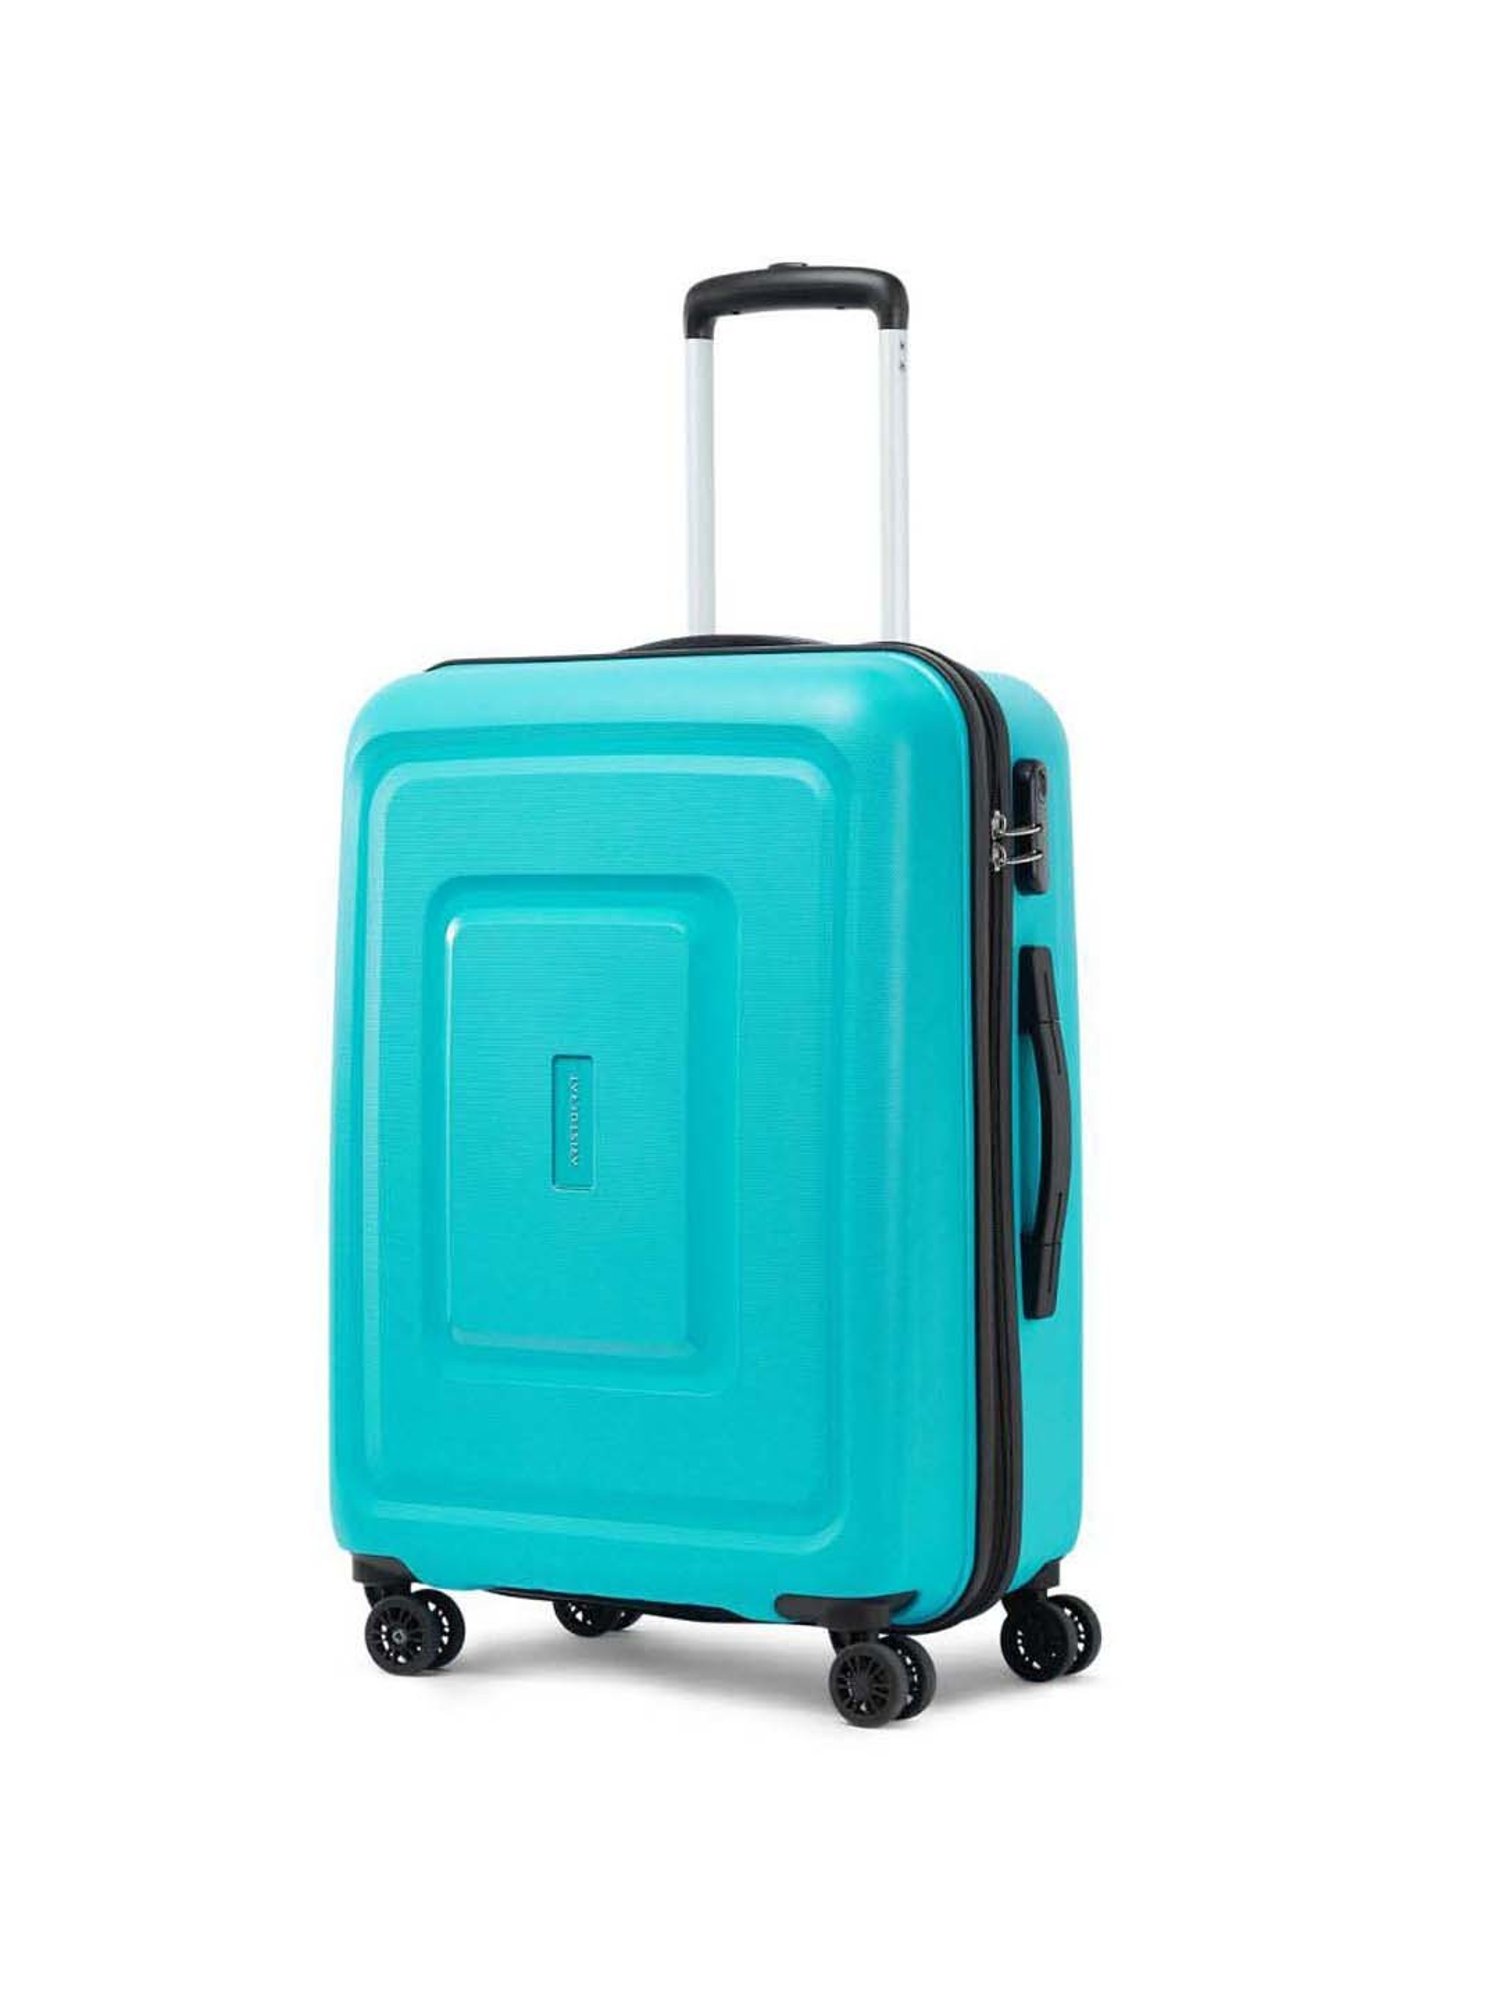 Medium Size Trolley Bag Price | Medium Size Blue Trolley Bag